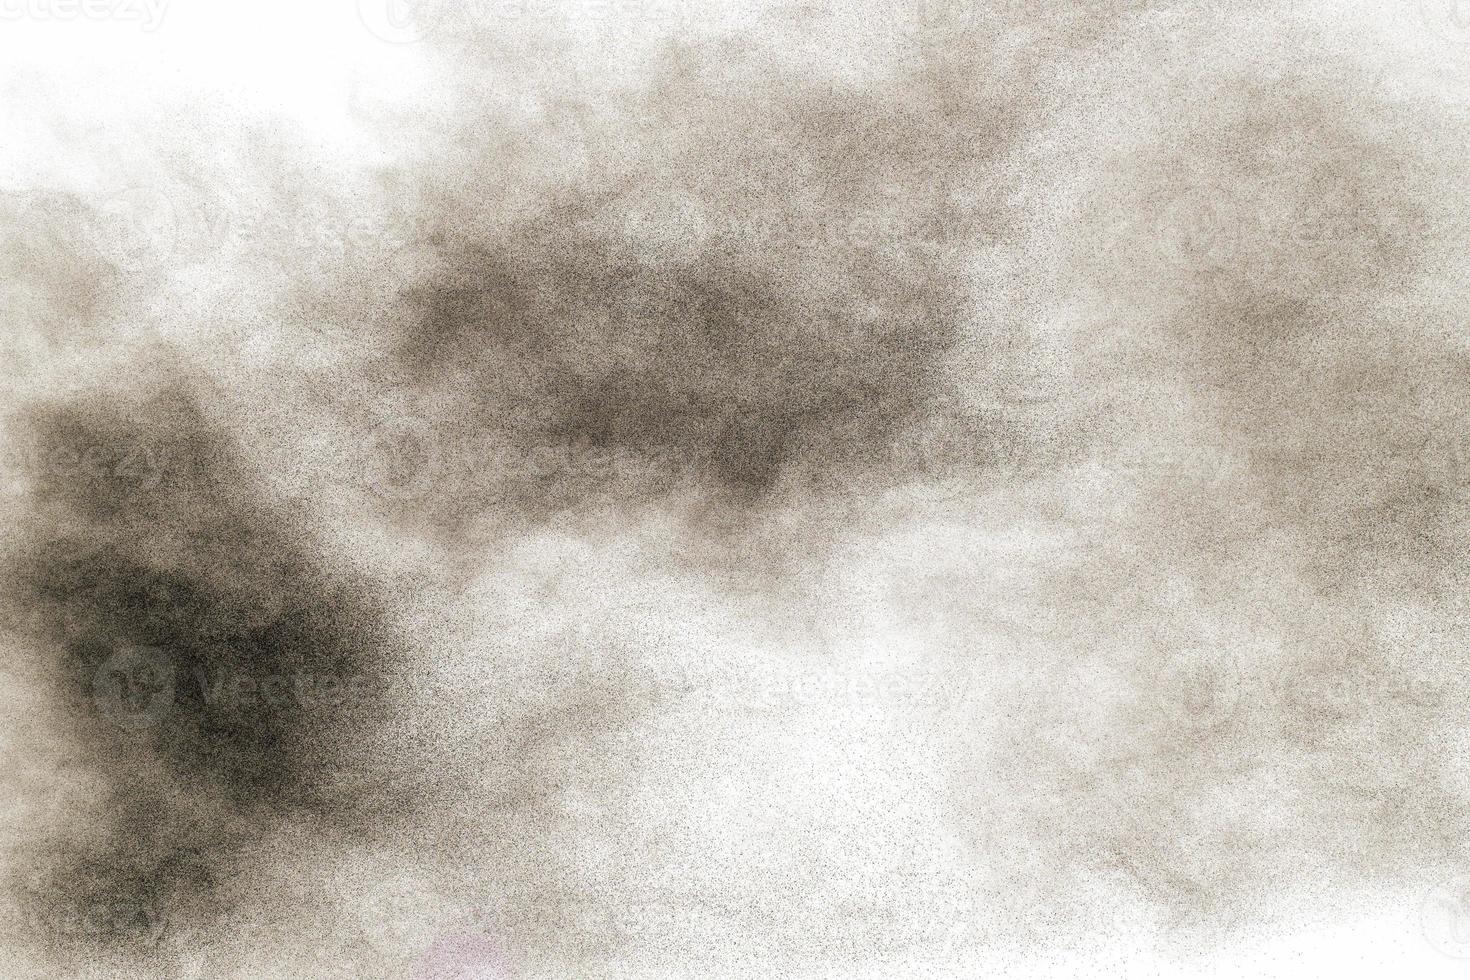 Schwarzpulverexplosion vor weißem Hintergrund. schwarze staubpartikel spritzen. foto